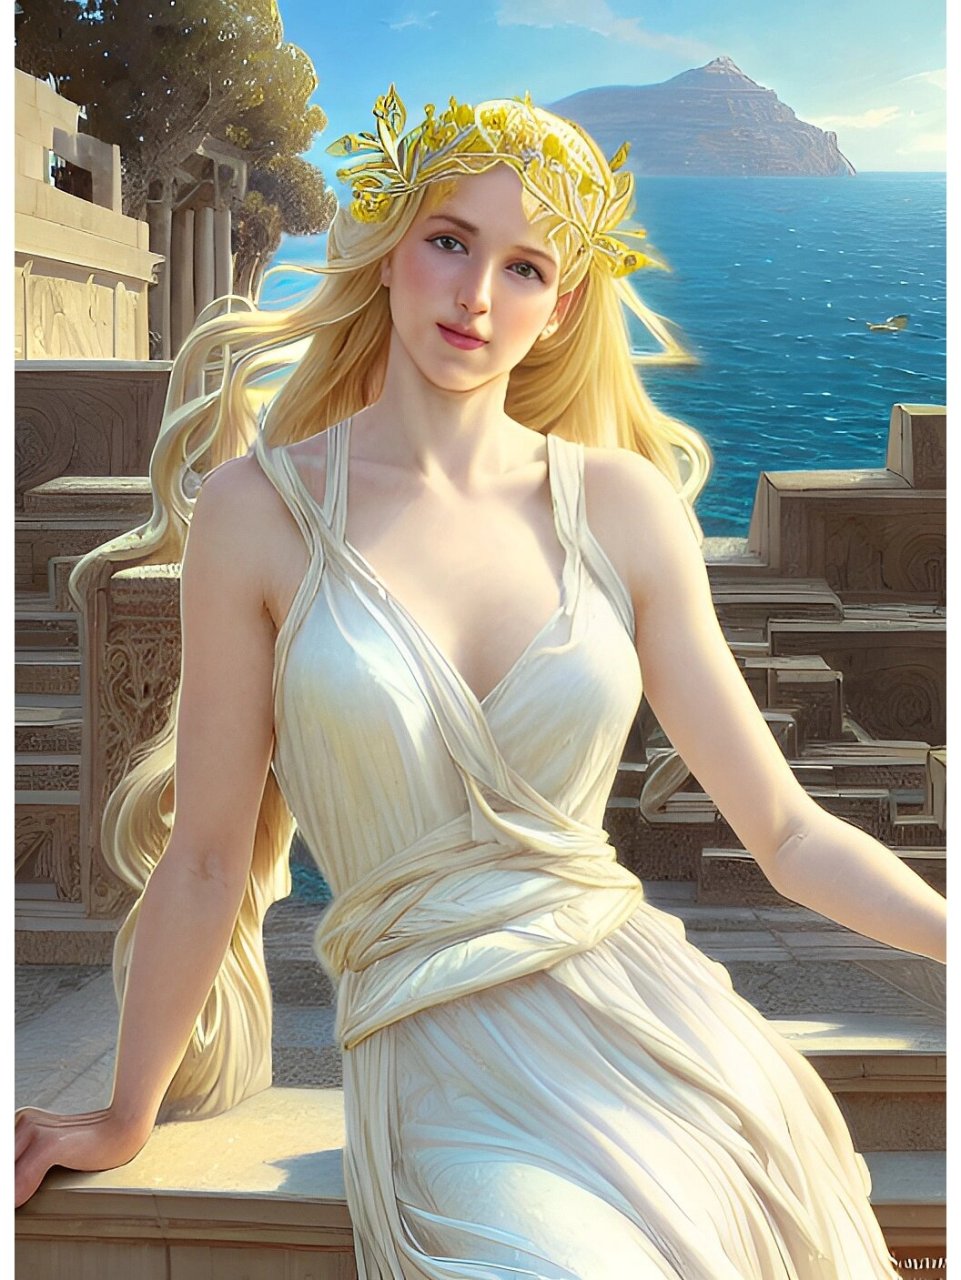 英语:aphrodite),是古希腊神话中爱情与美丽的女神,同时也是性欲女神